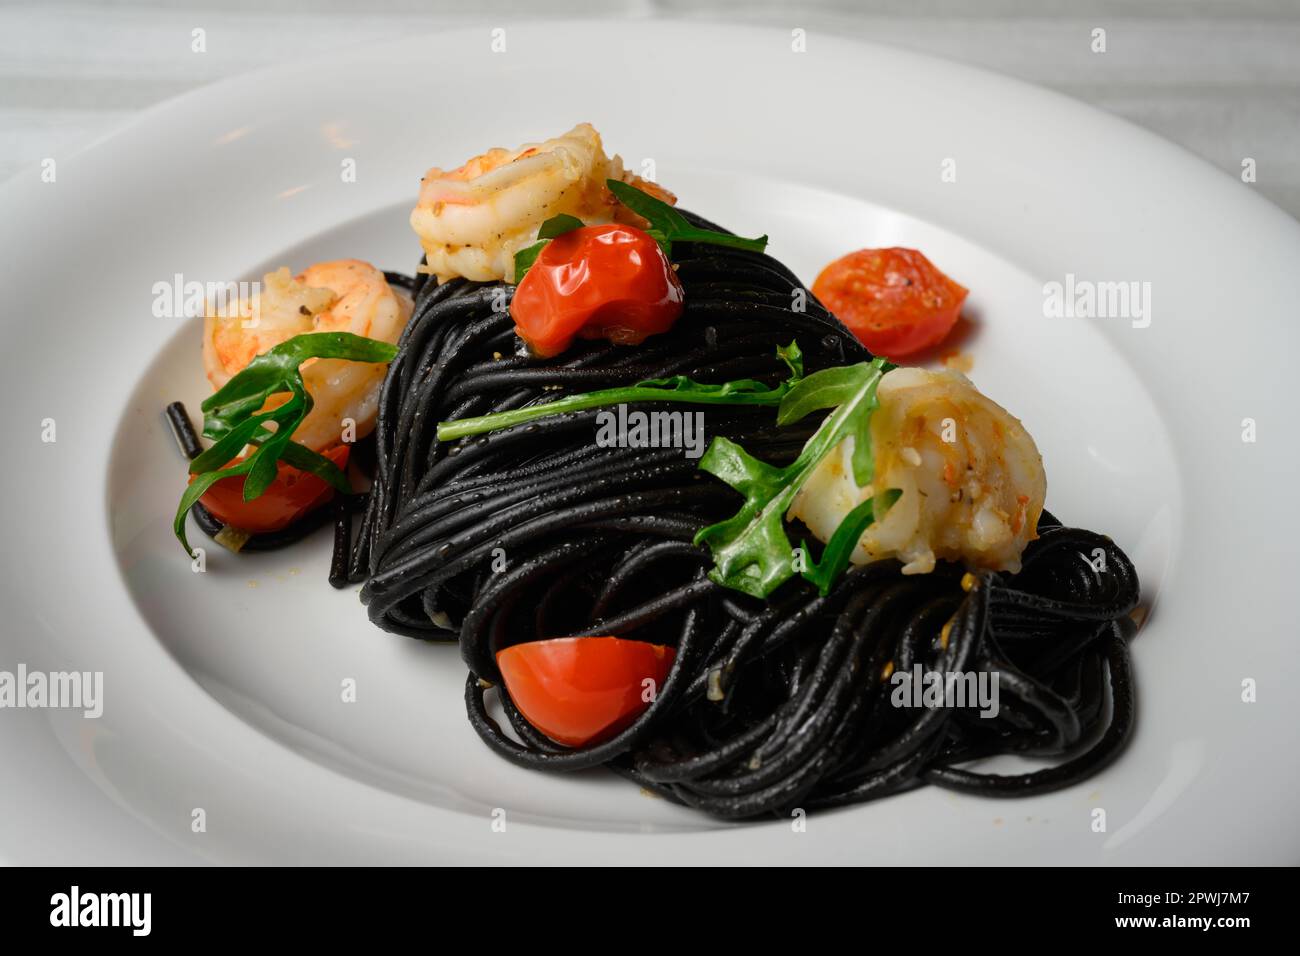 Spaghetti al Nero di Seppia con Gamberi, Pasta italiana con inchiostro calamaro, gamberi, pomodoro e rucola Foto Stock